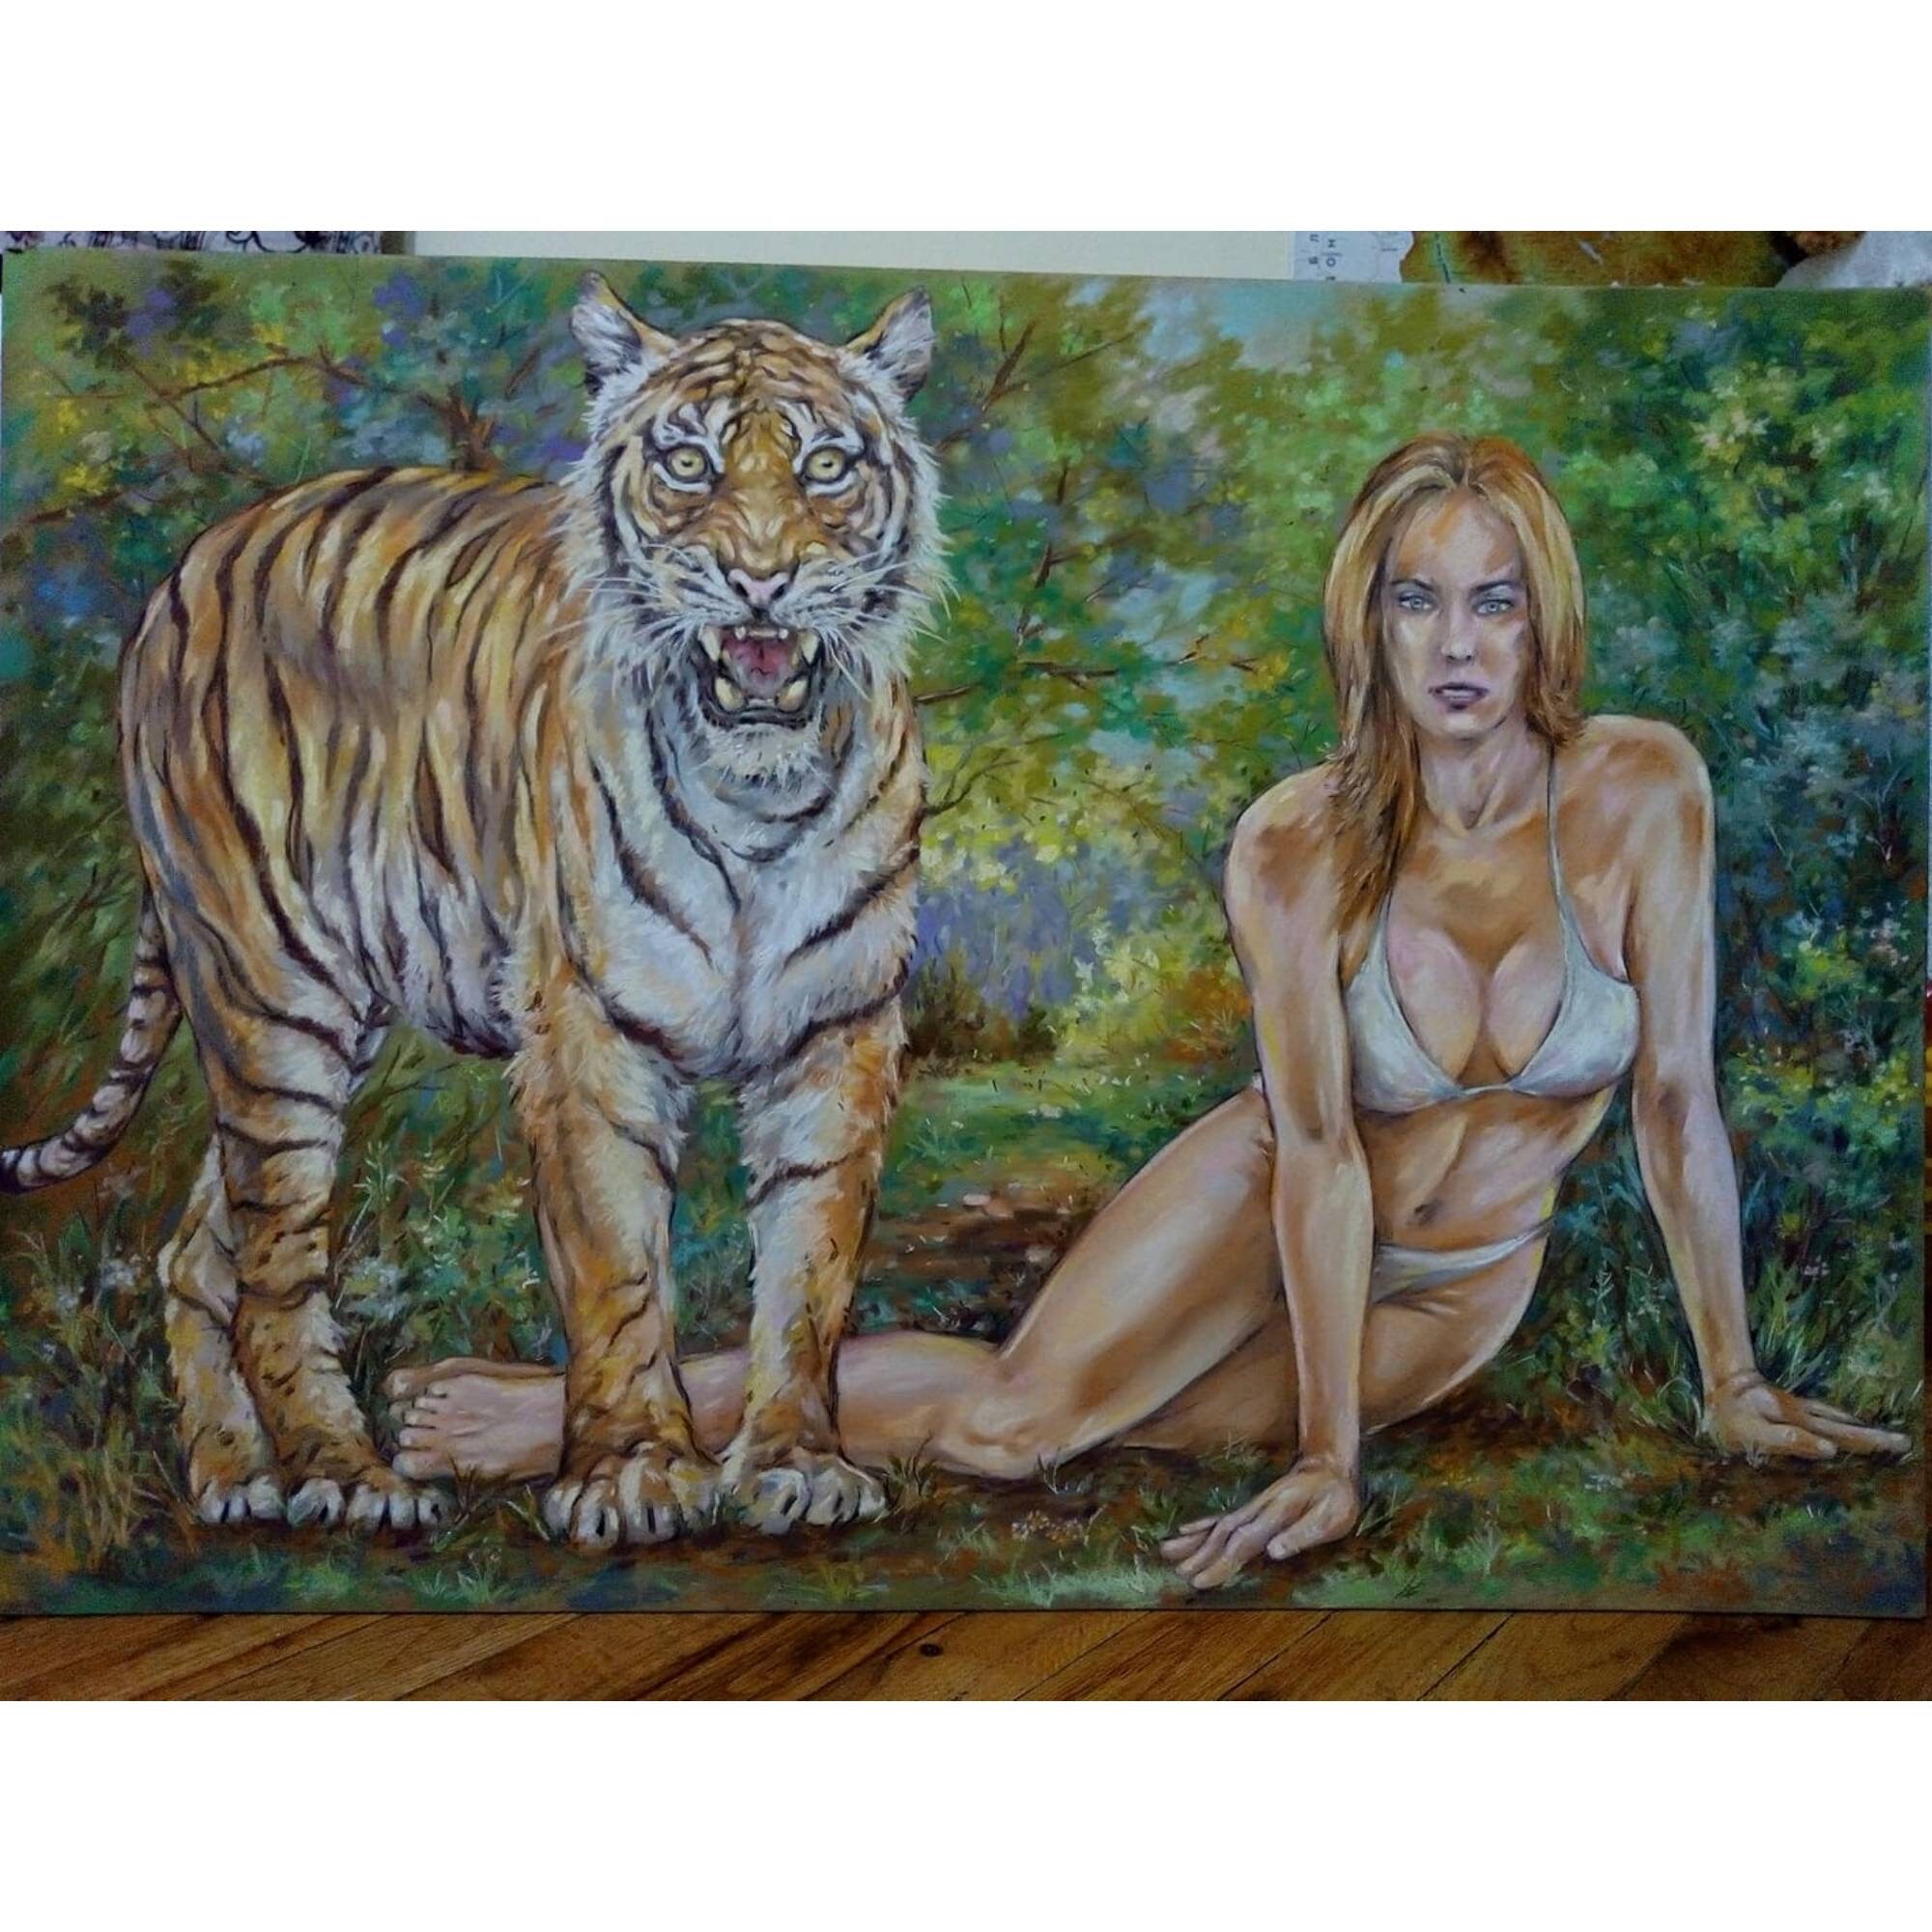 irish wife nude tiger Fucking Pics Hq